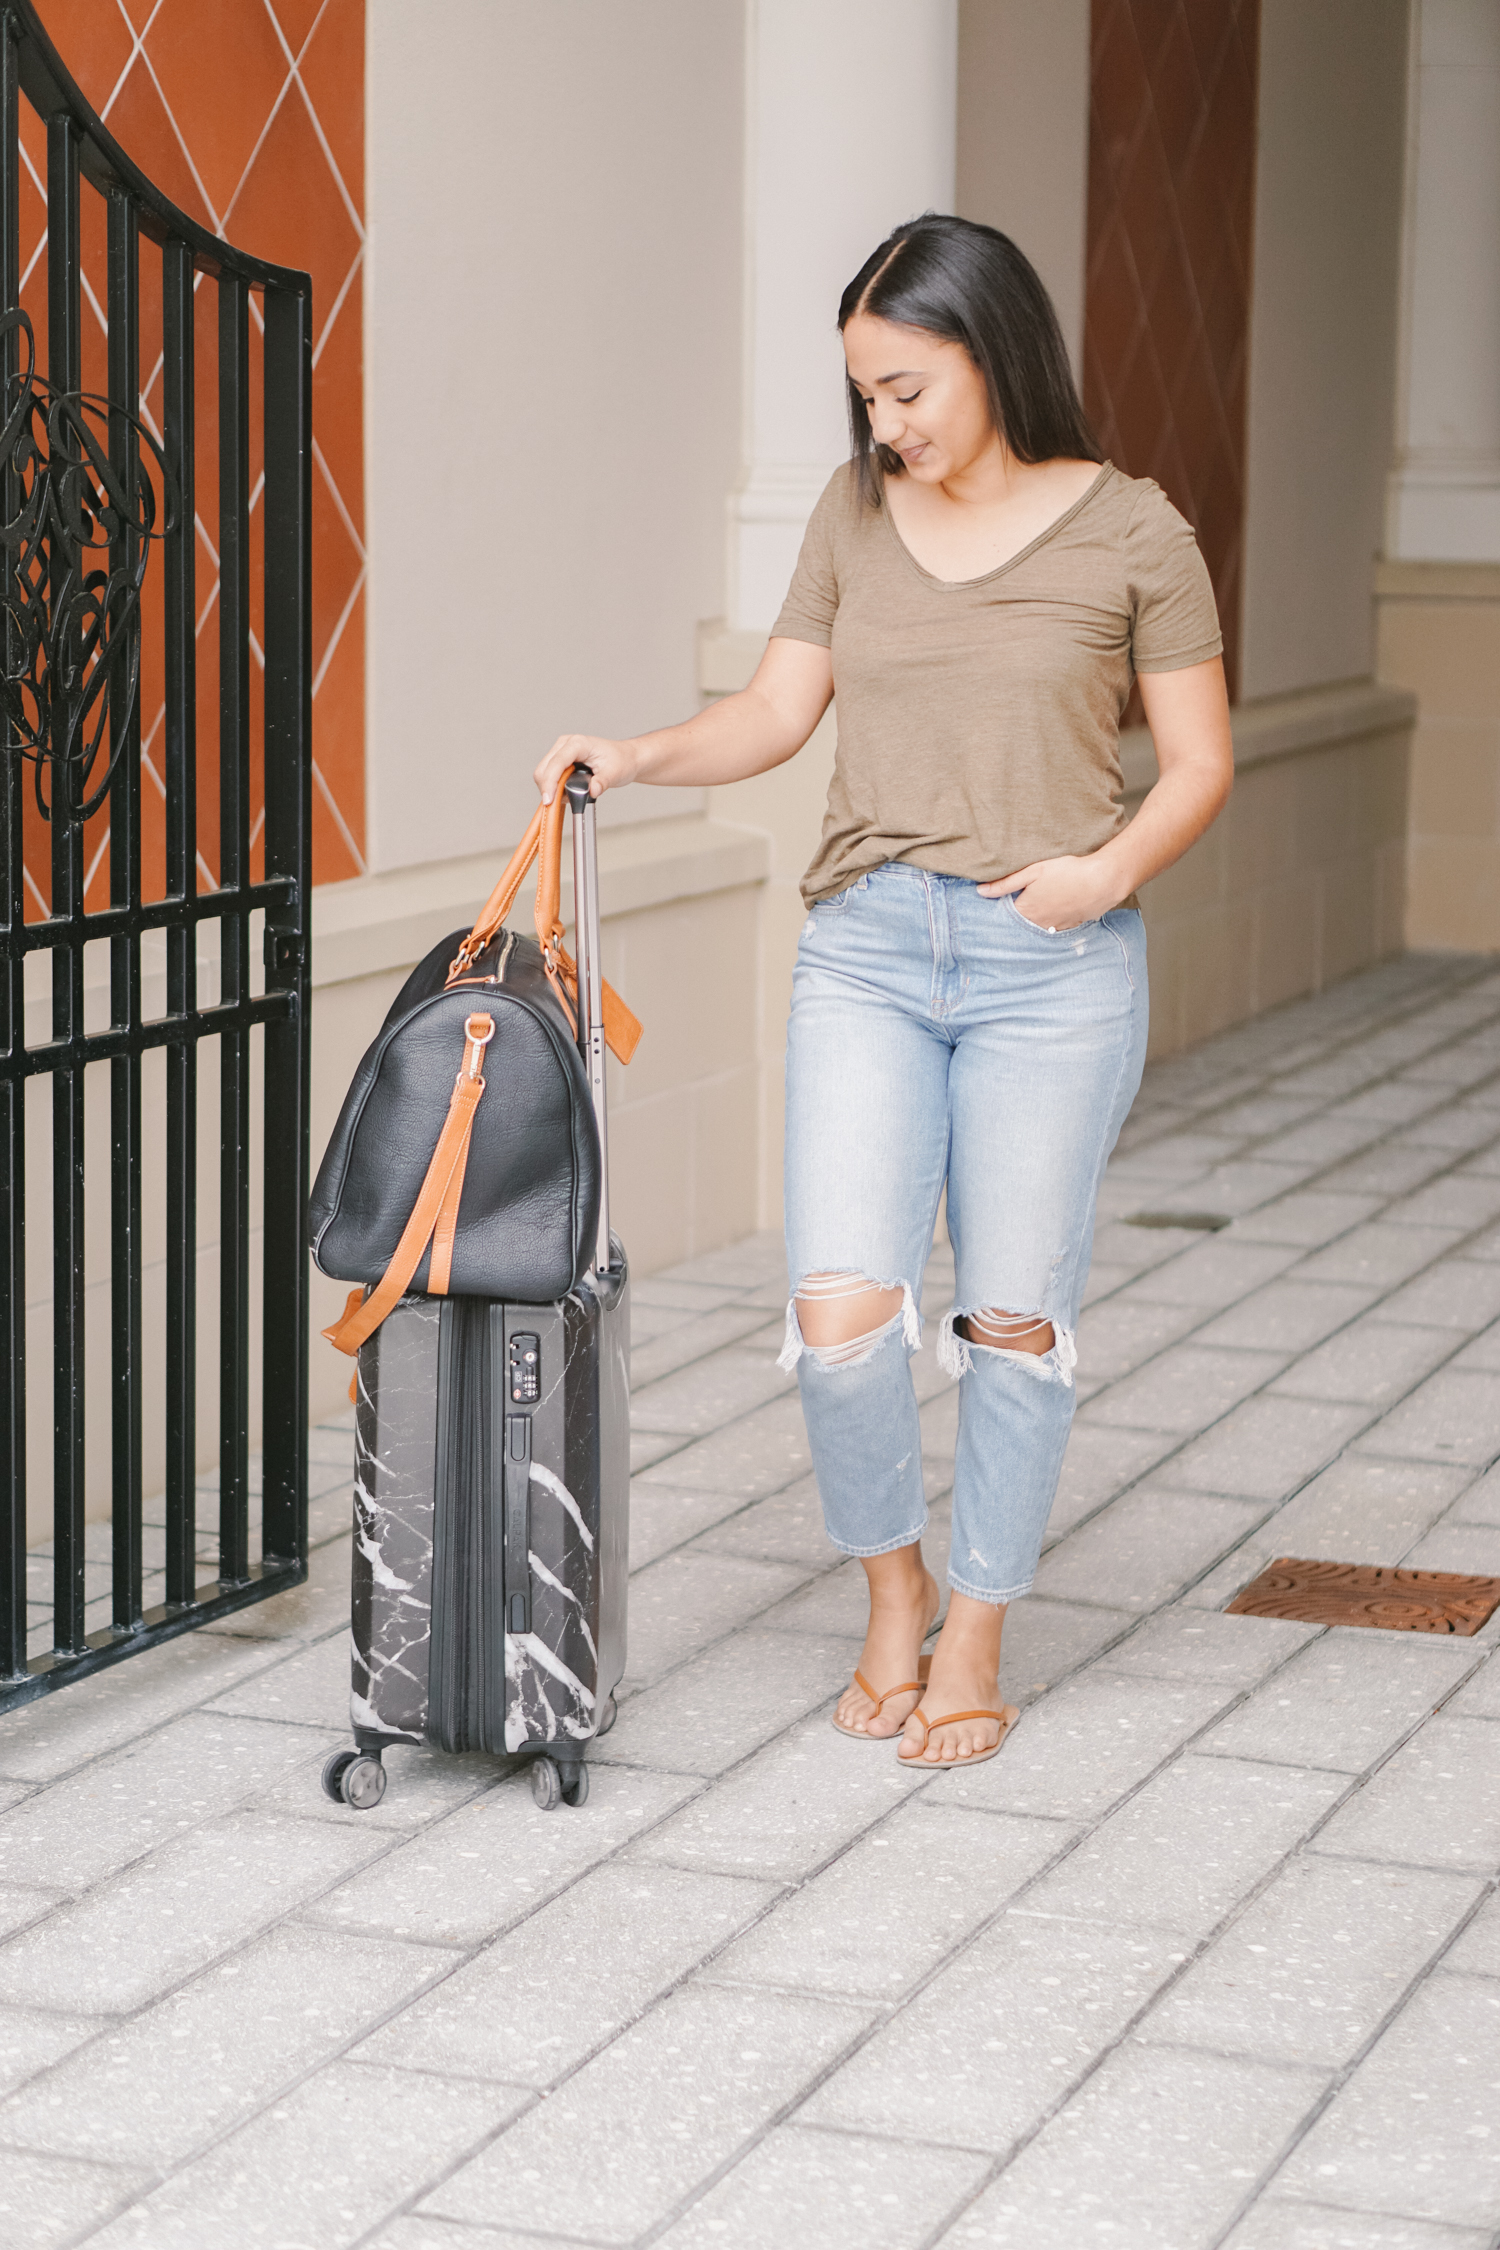 5 Tips to Become a Carryon Traveler- Monique McHugh Blog